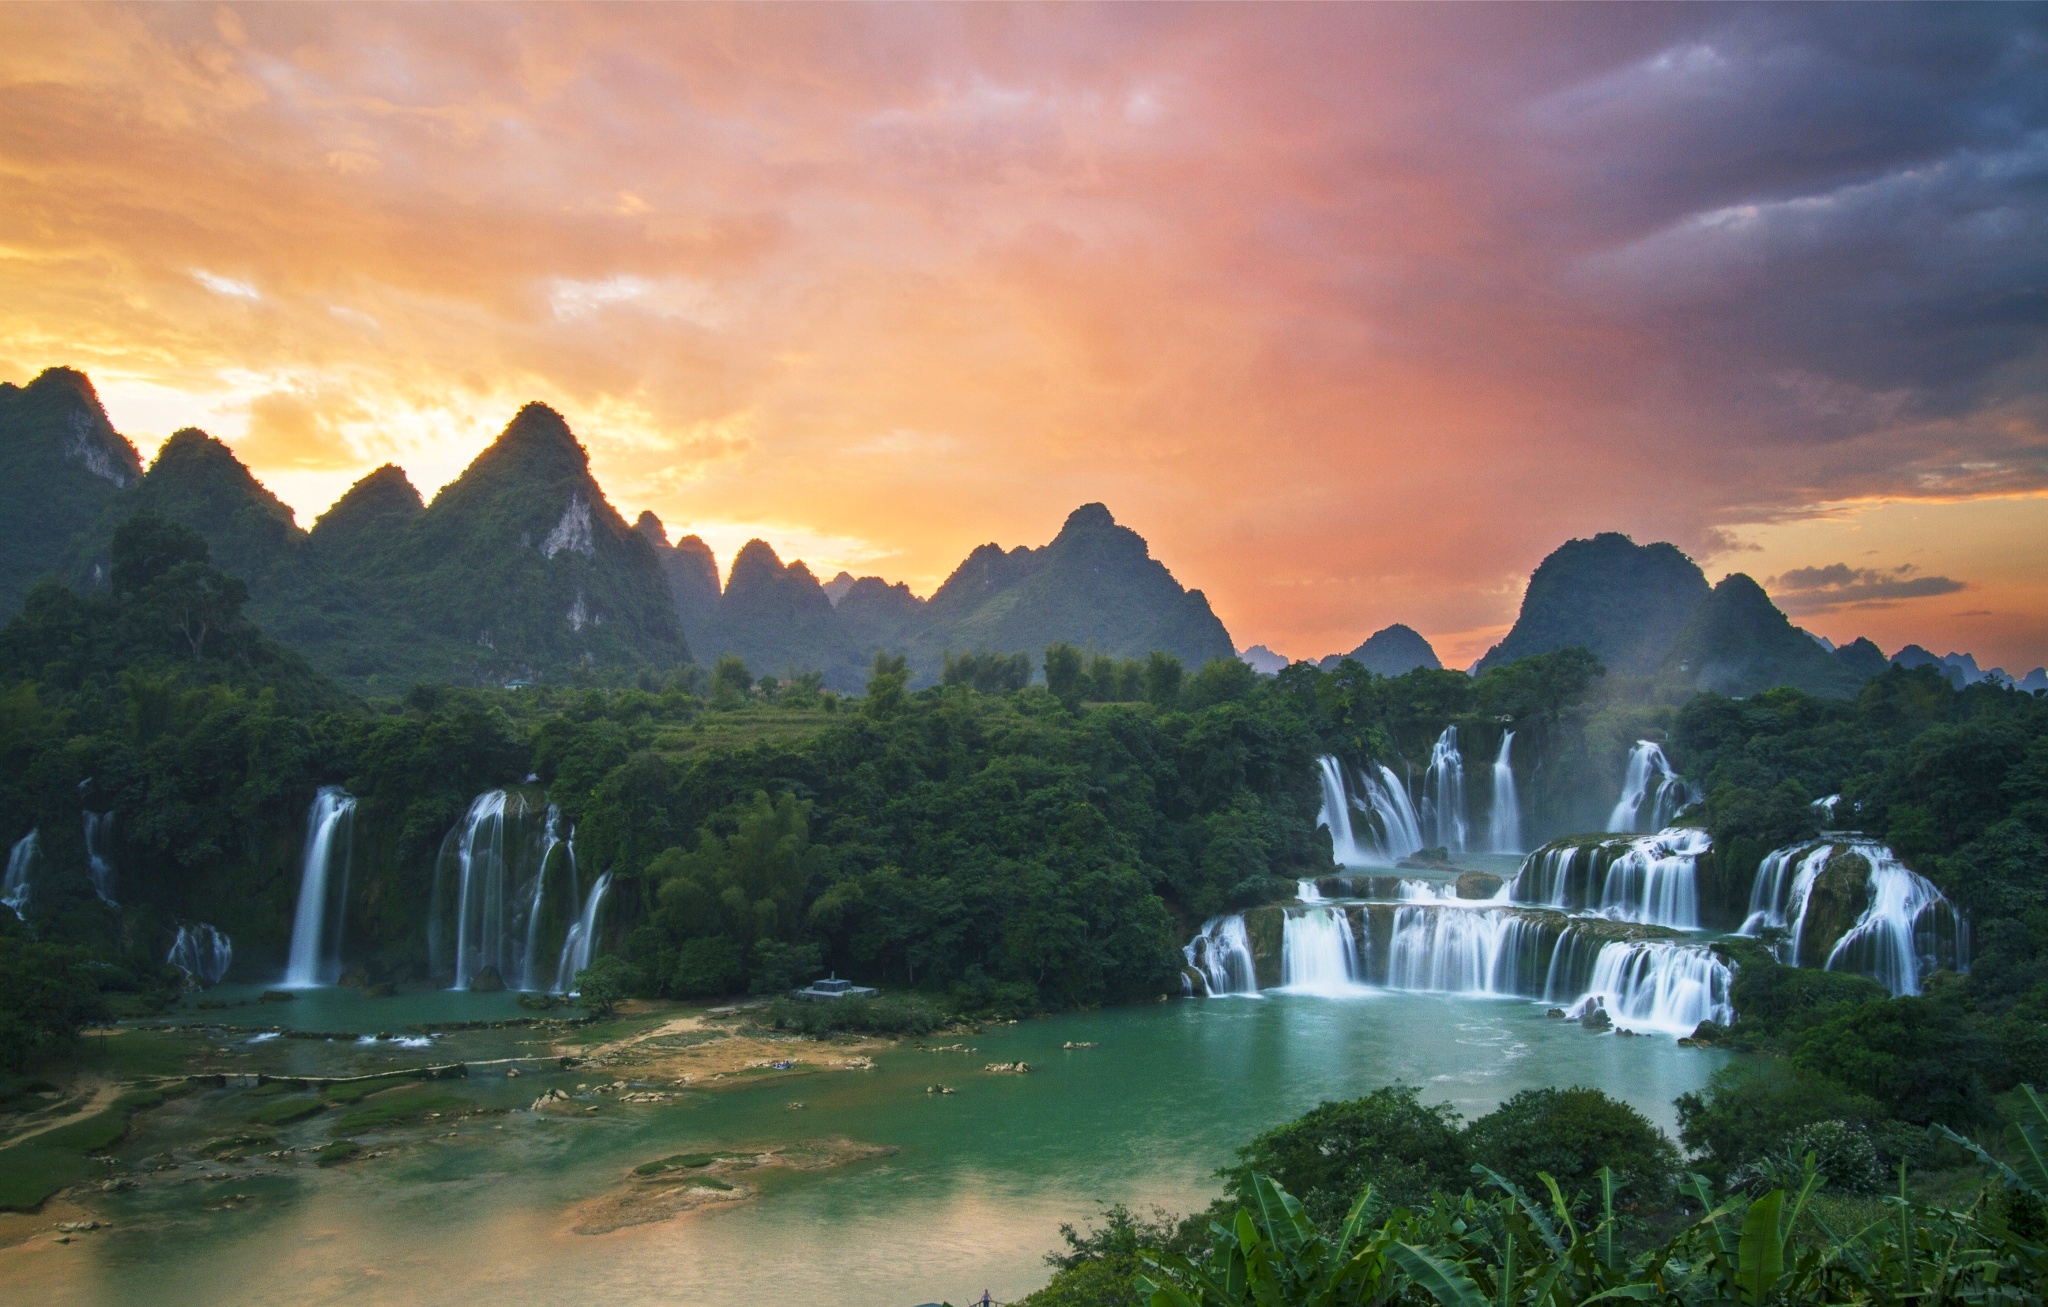 vietnam, ban gioc waterfall, ban gioc detian falls, earth, guichin river, mountain, quây sơn river, sunset, waterfalls